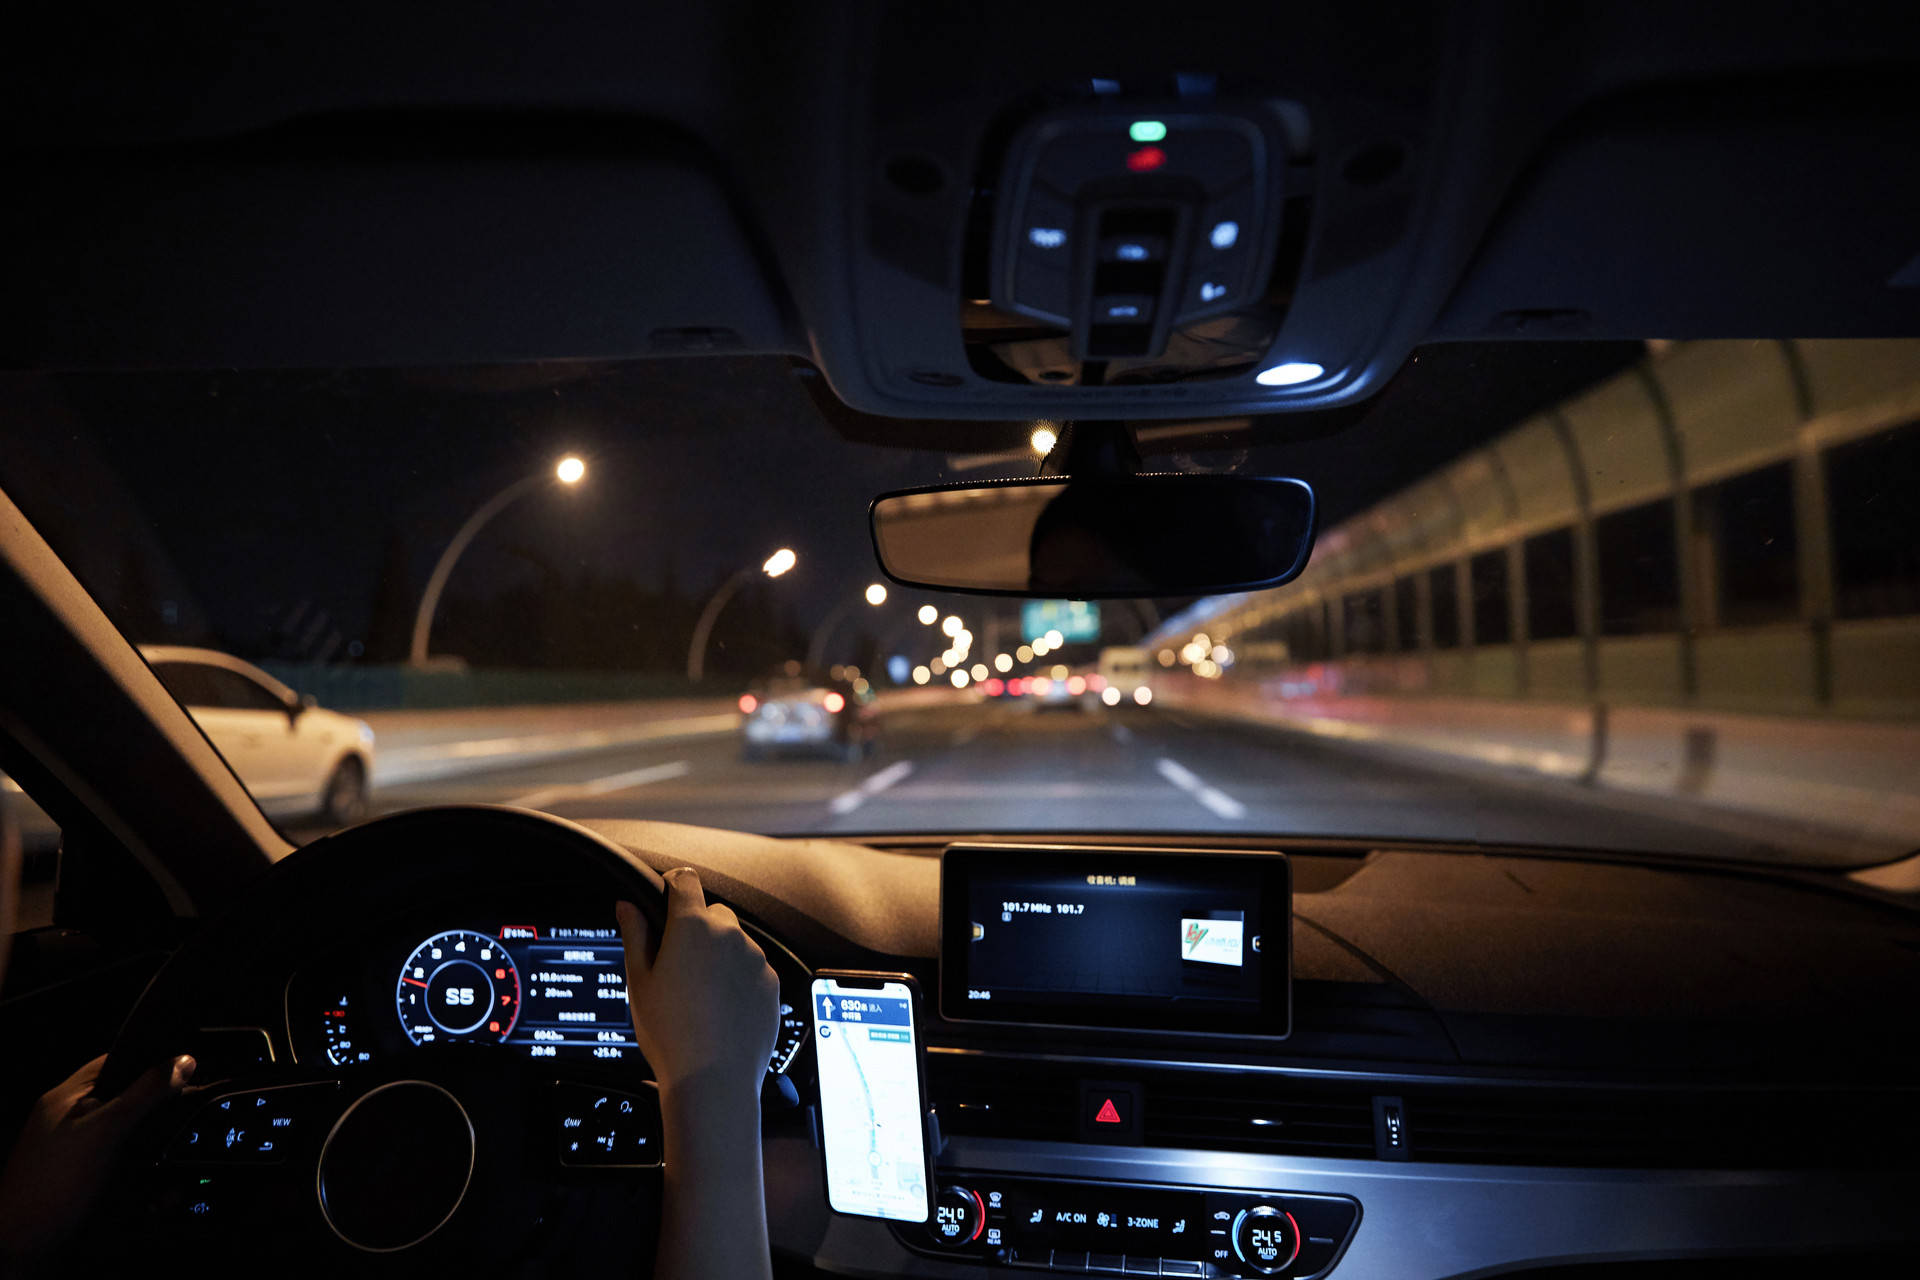 夜间开车走高速比白天危险多少?答案让90%的人大吃一惊!